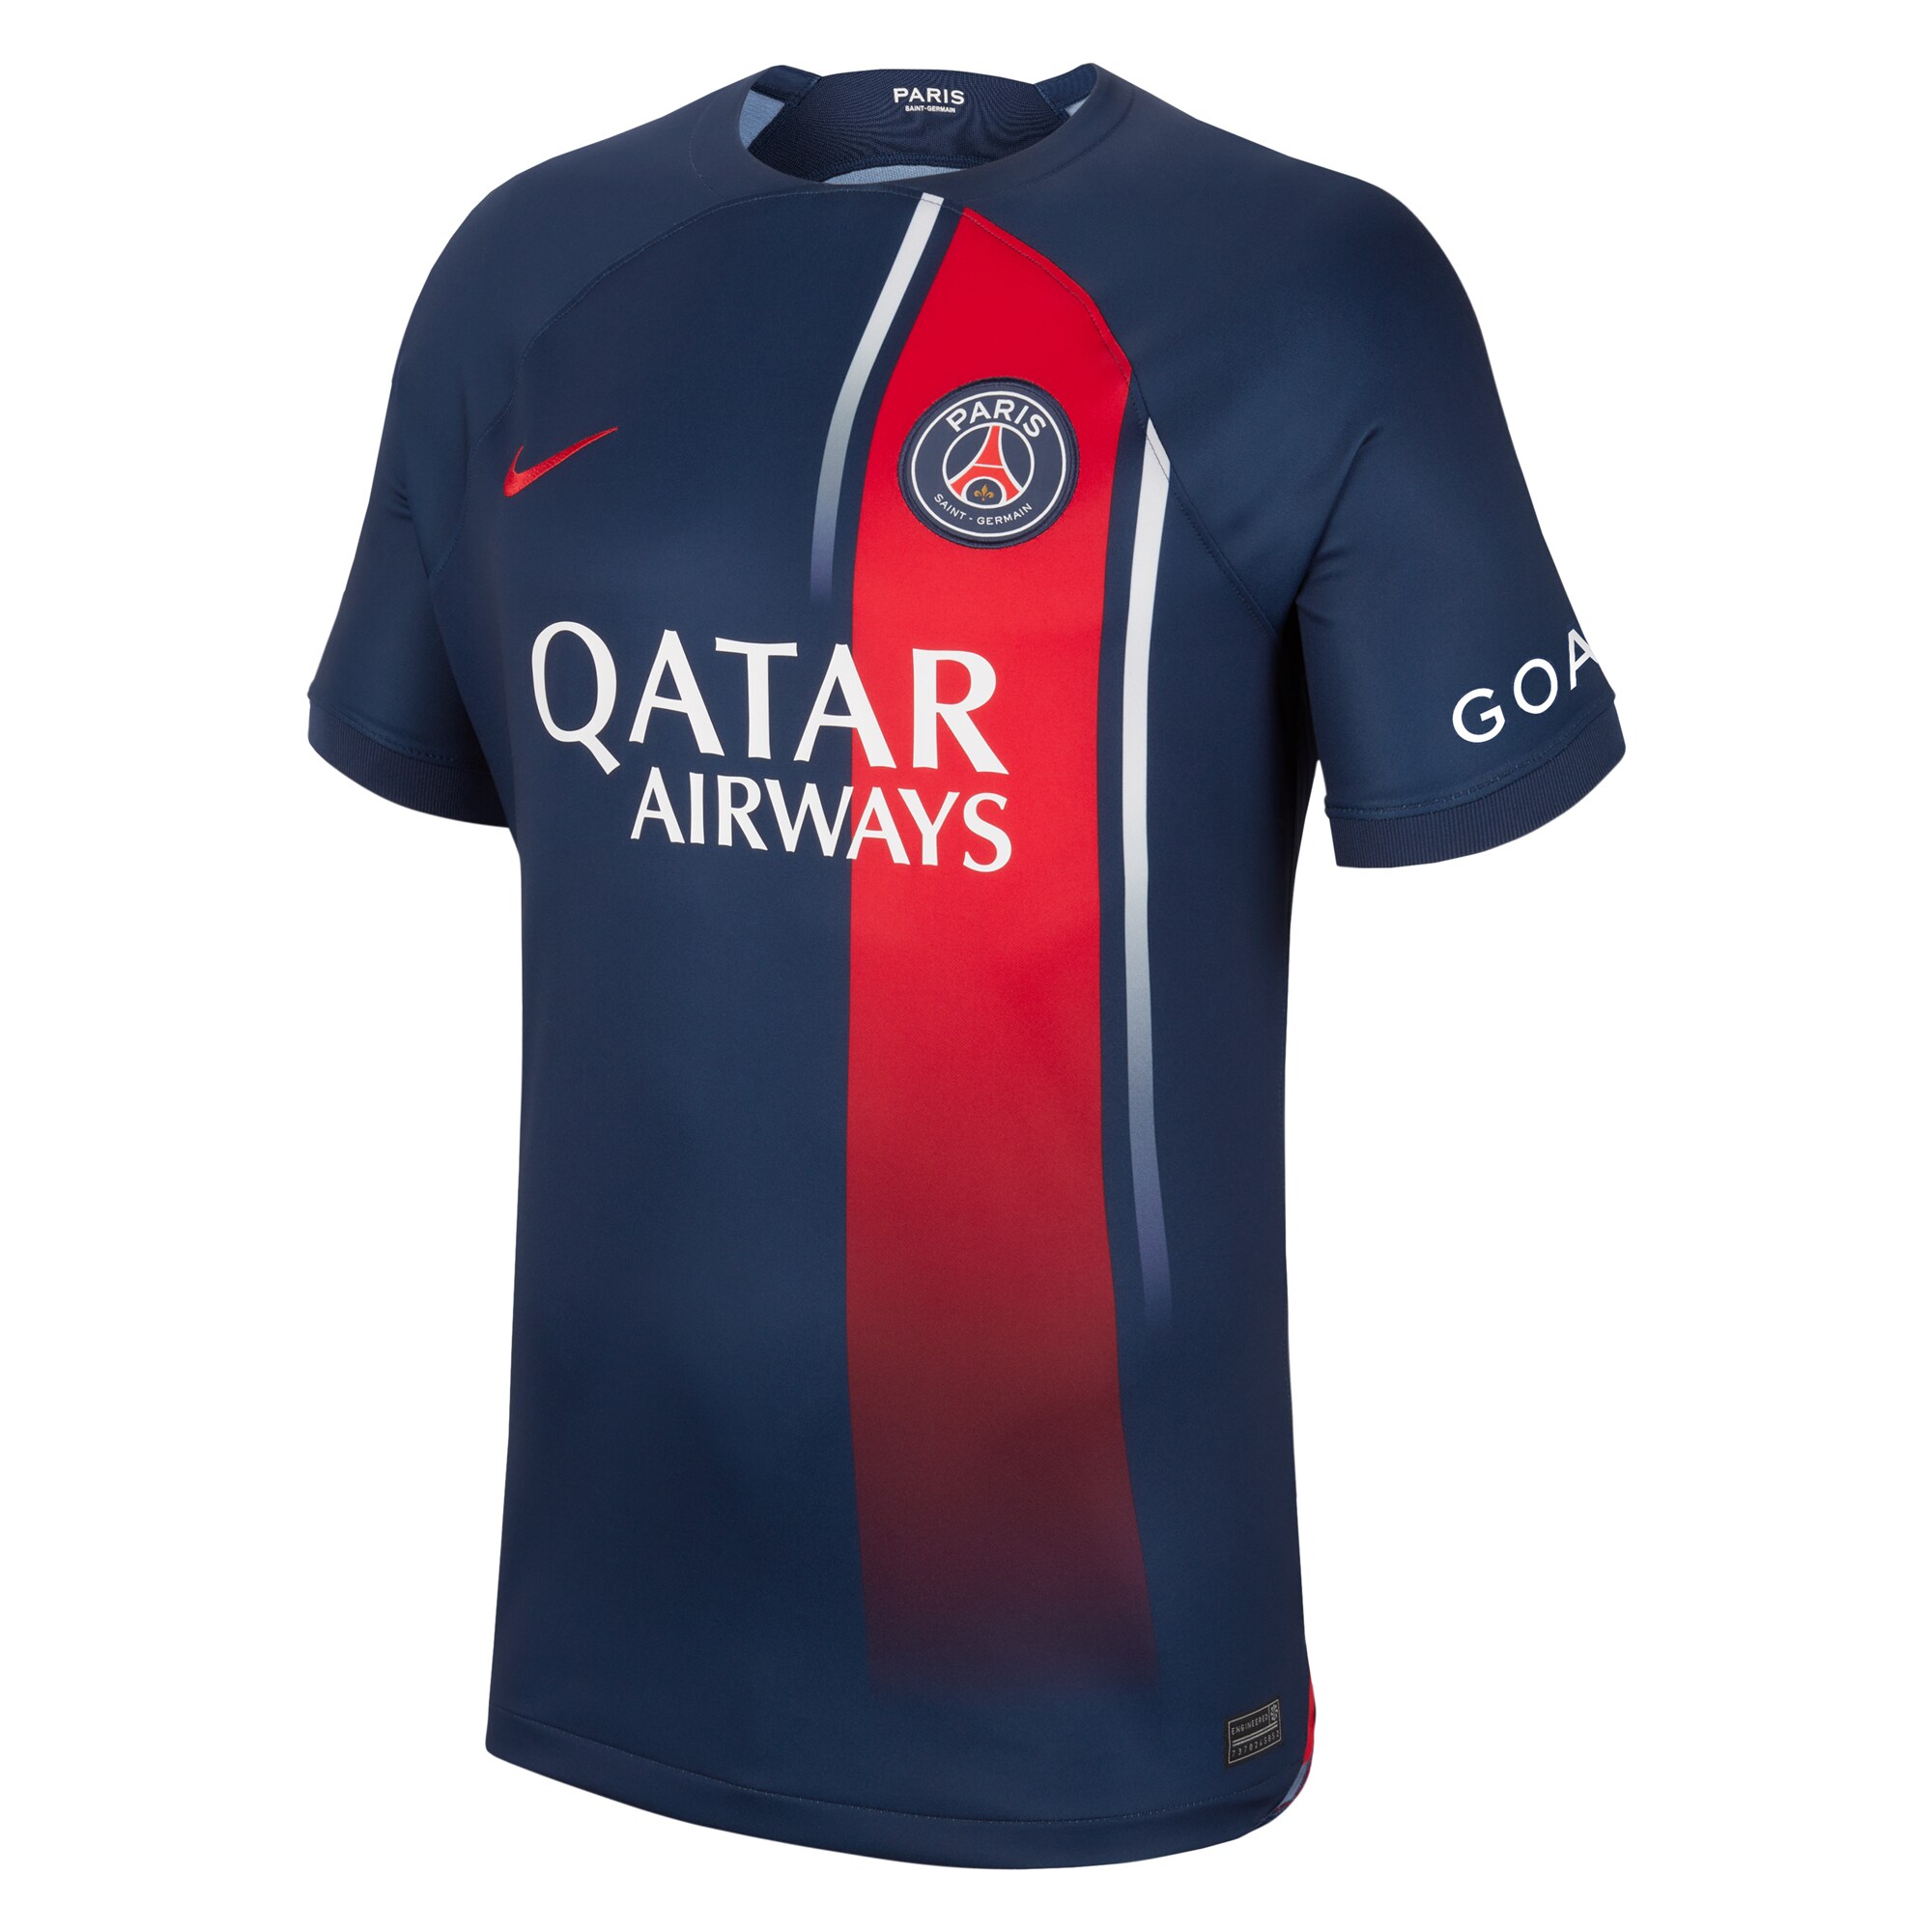 Paris Saint-Germain Home Stadium Shirt 2023-24 with Lee Kang In 19 printing